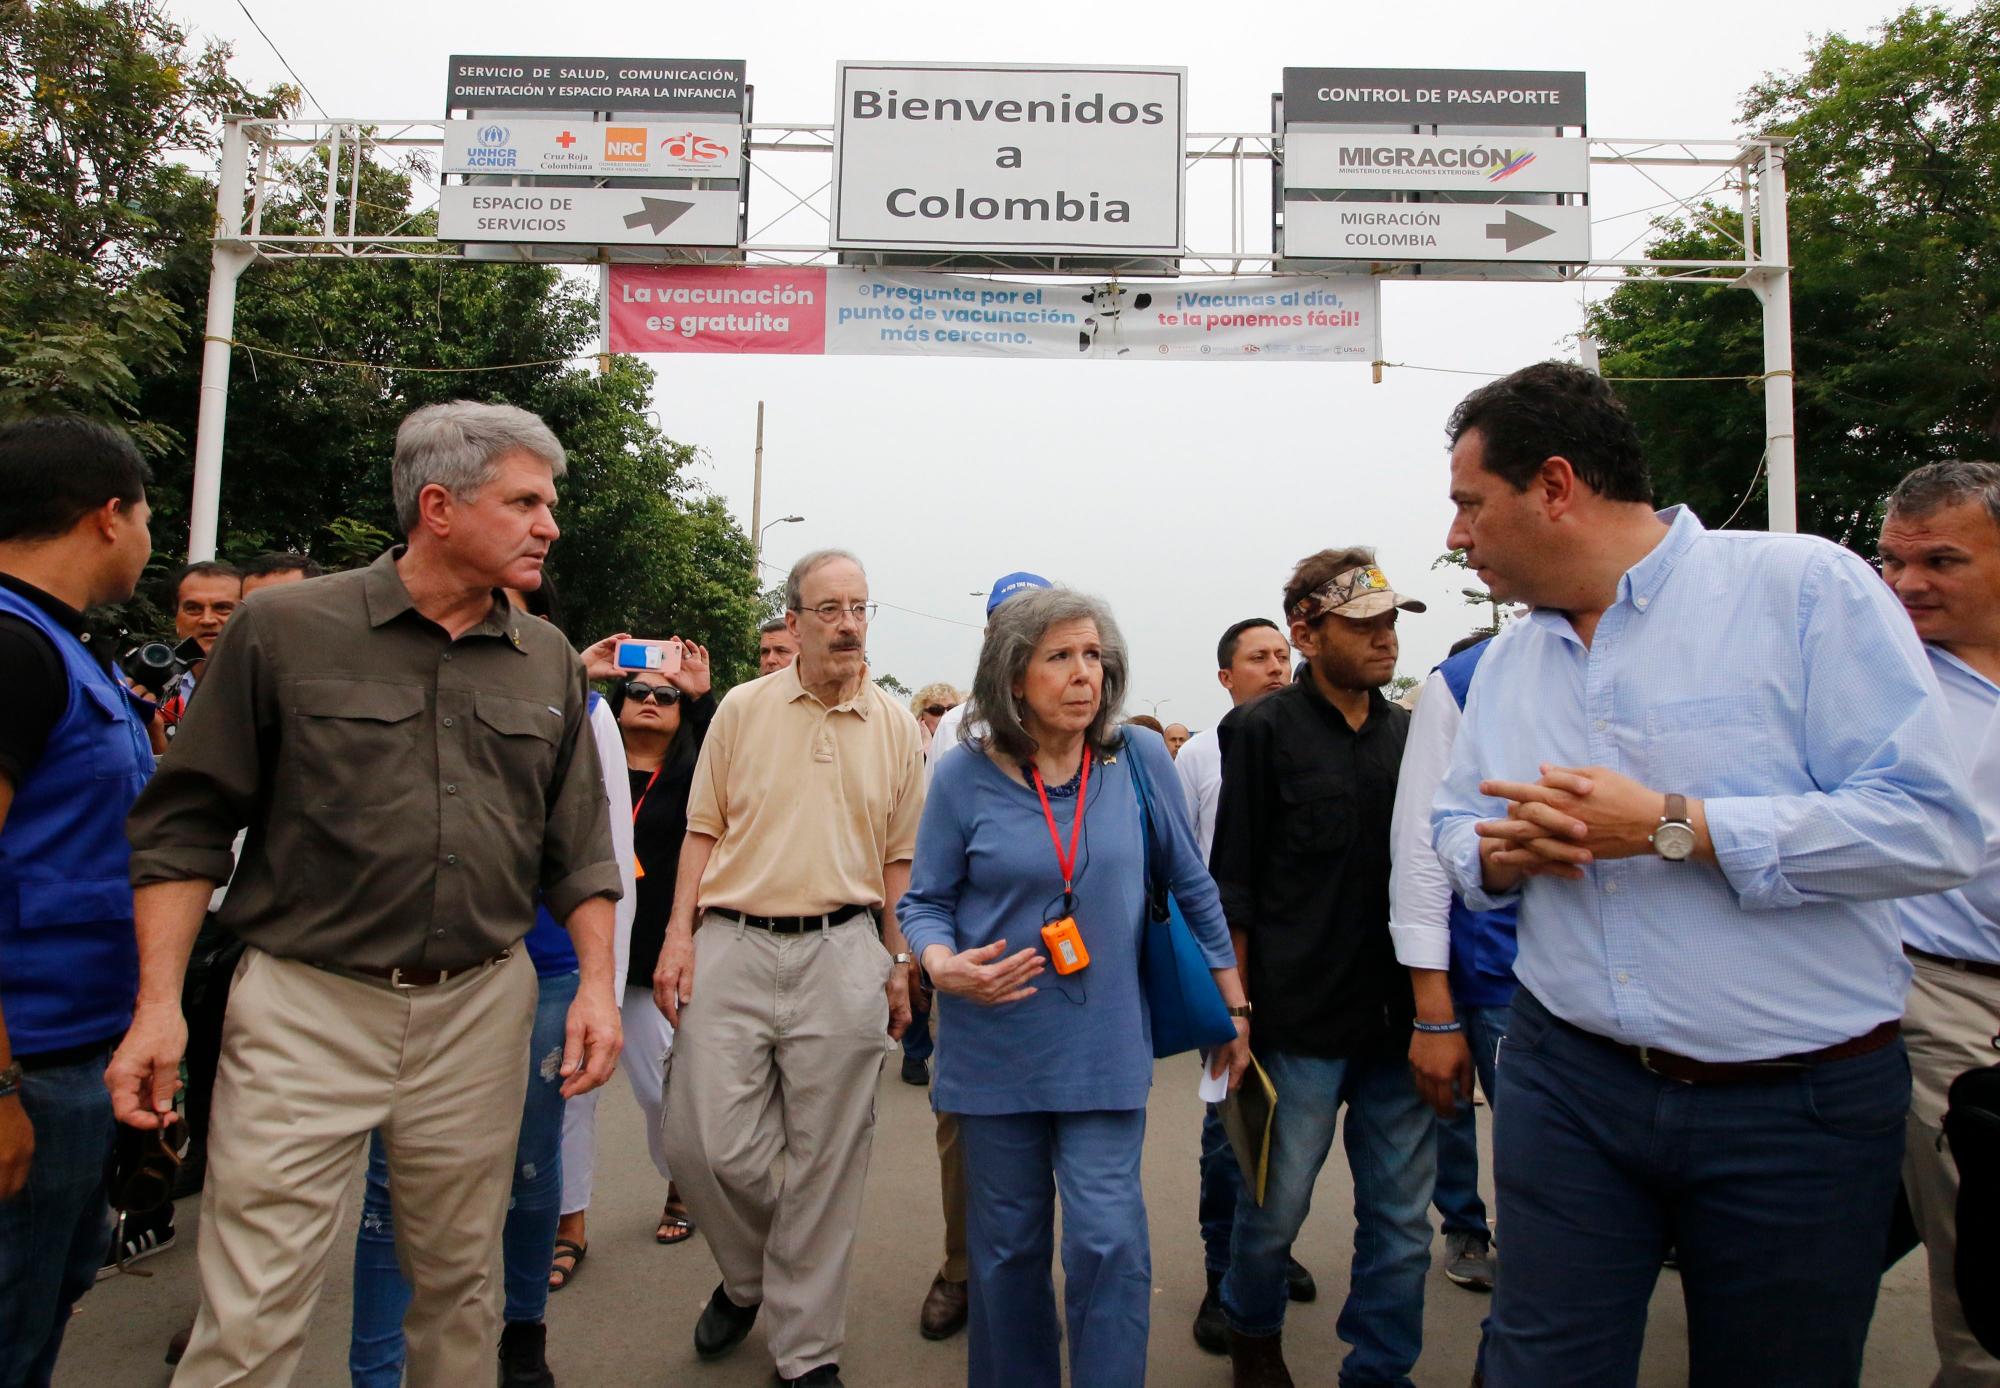  Los senadores estadounidenses Michael McCaul (i) y Chairman Eliot Engel (2i) caminan este viernes, durante una vista que realizaron varios senadores norteamericanos al puente internacional Simón Bolívar, en la frontera entre Cúcuta (Colombia) y Venezuela.